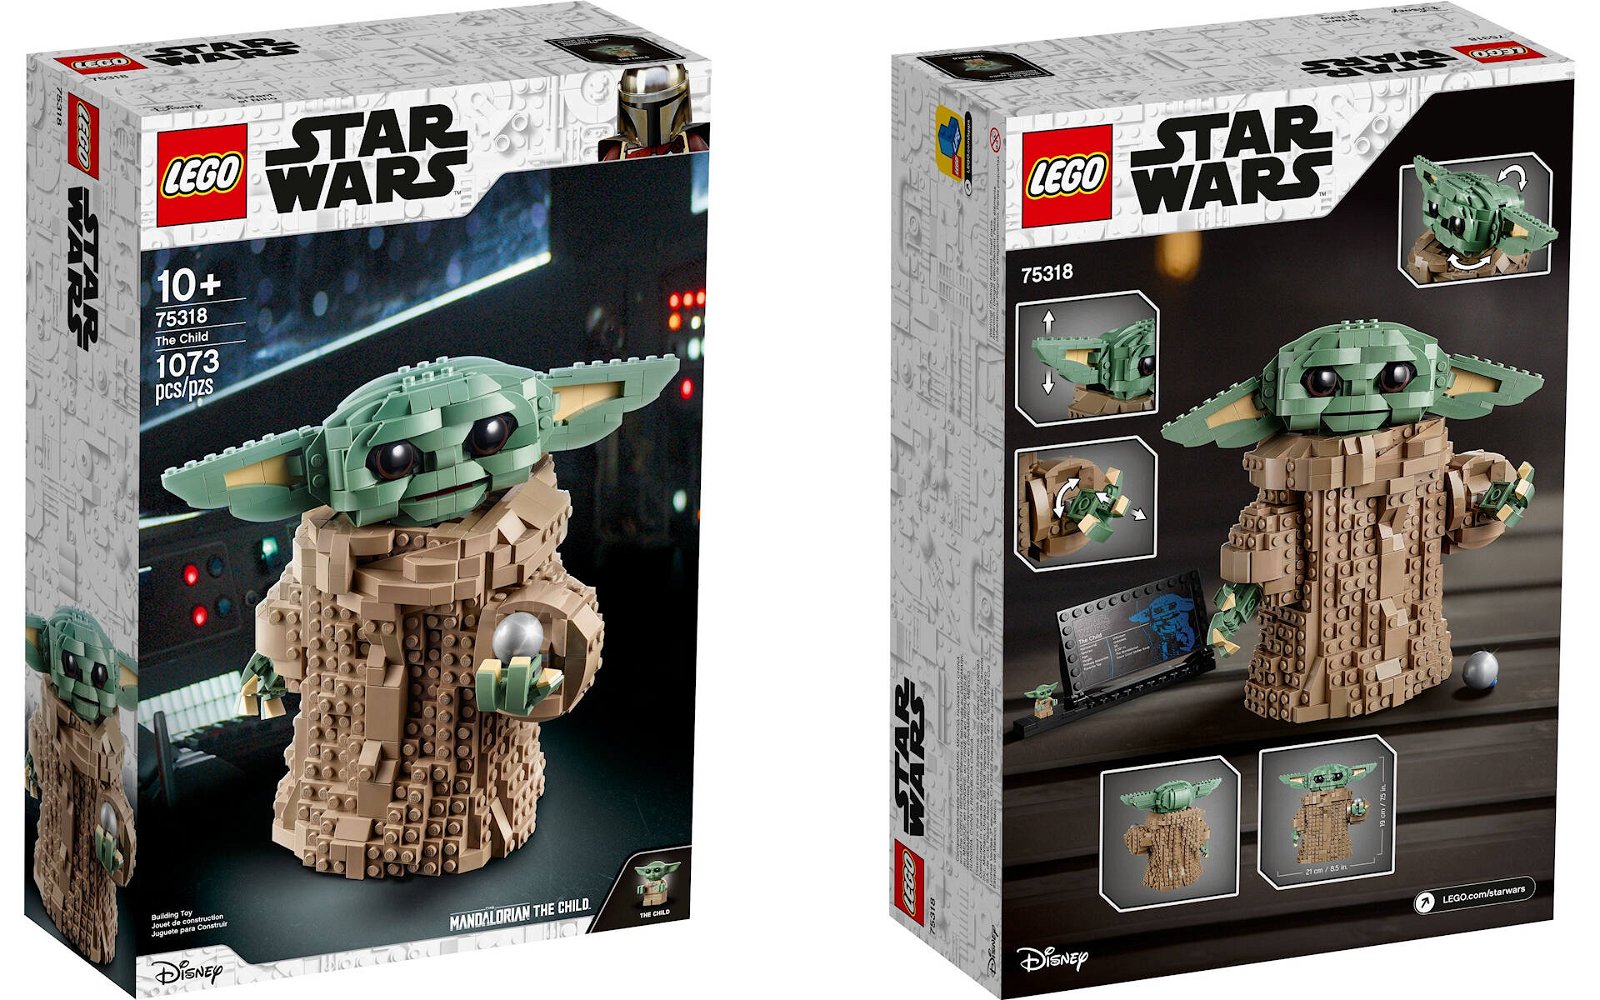 Immagine di LEGO: è stato annunciato il nuovo set LEGO Star Wars # 75318 Il Bambino